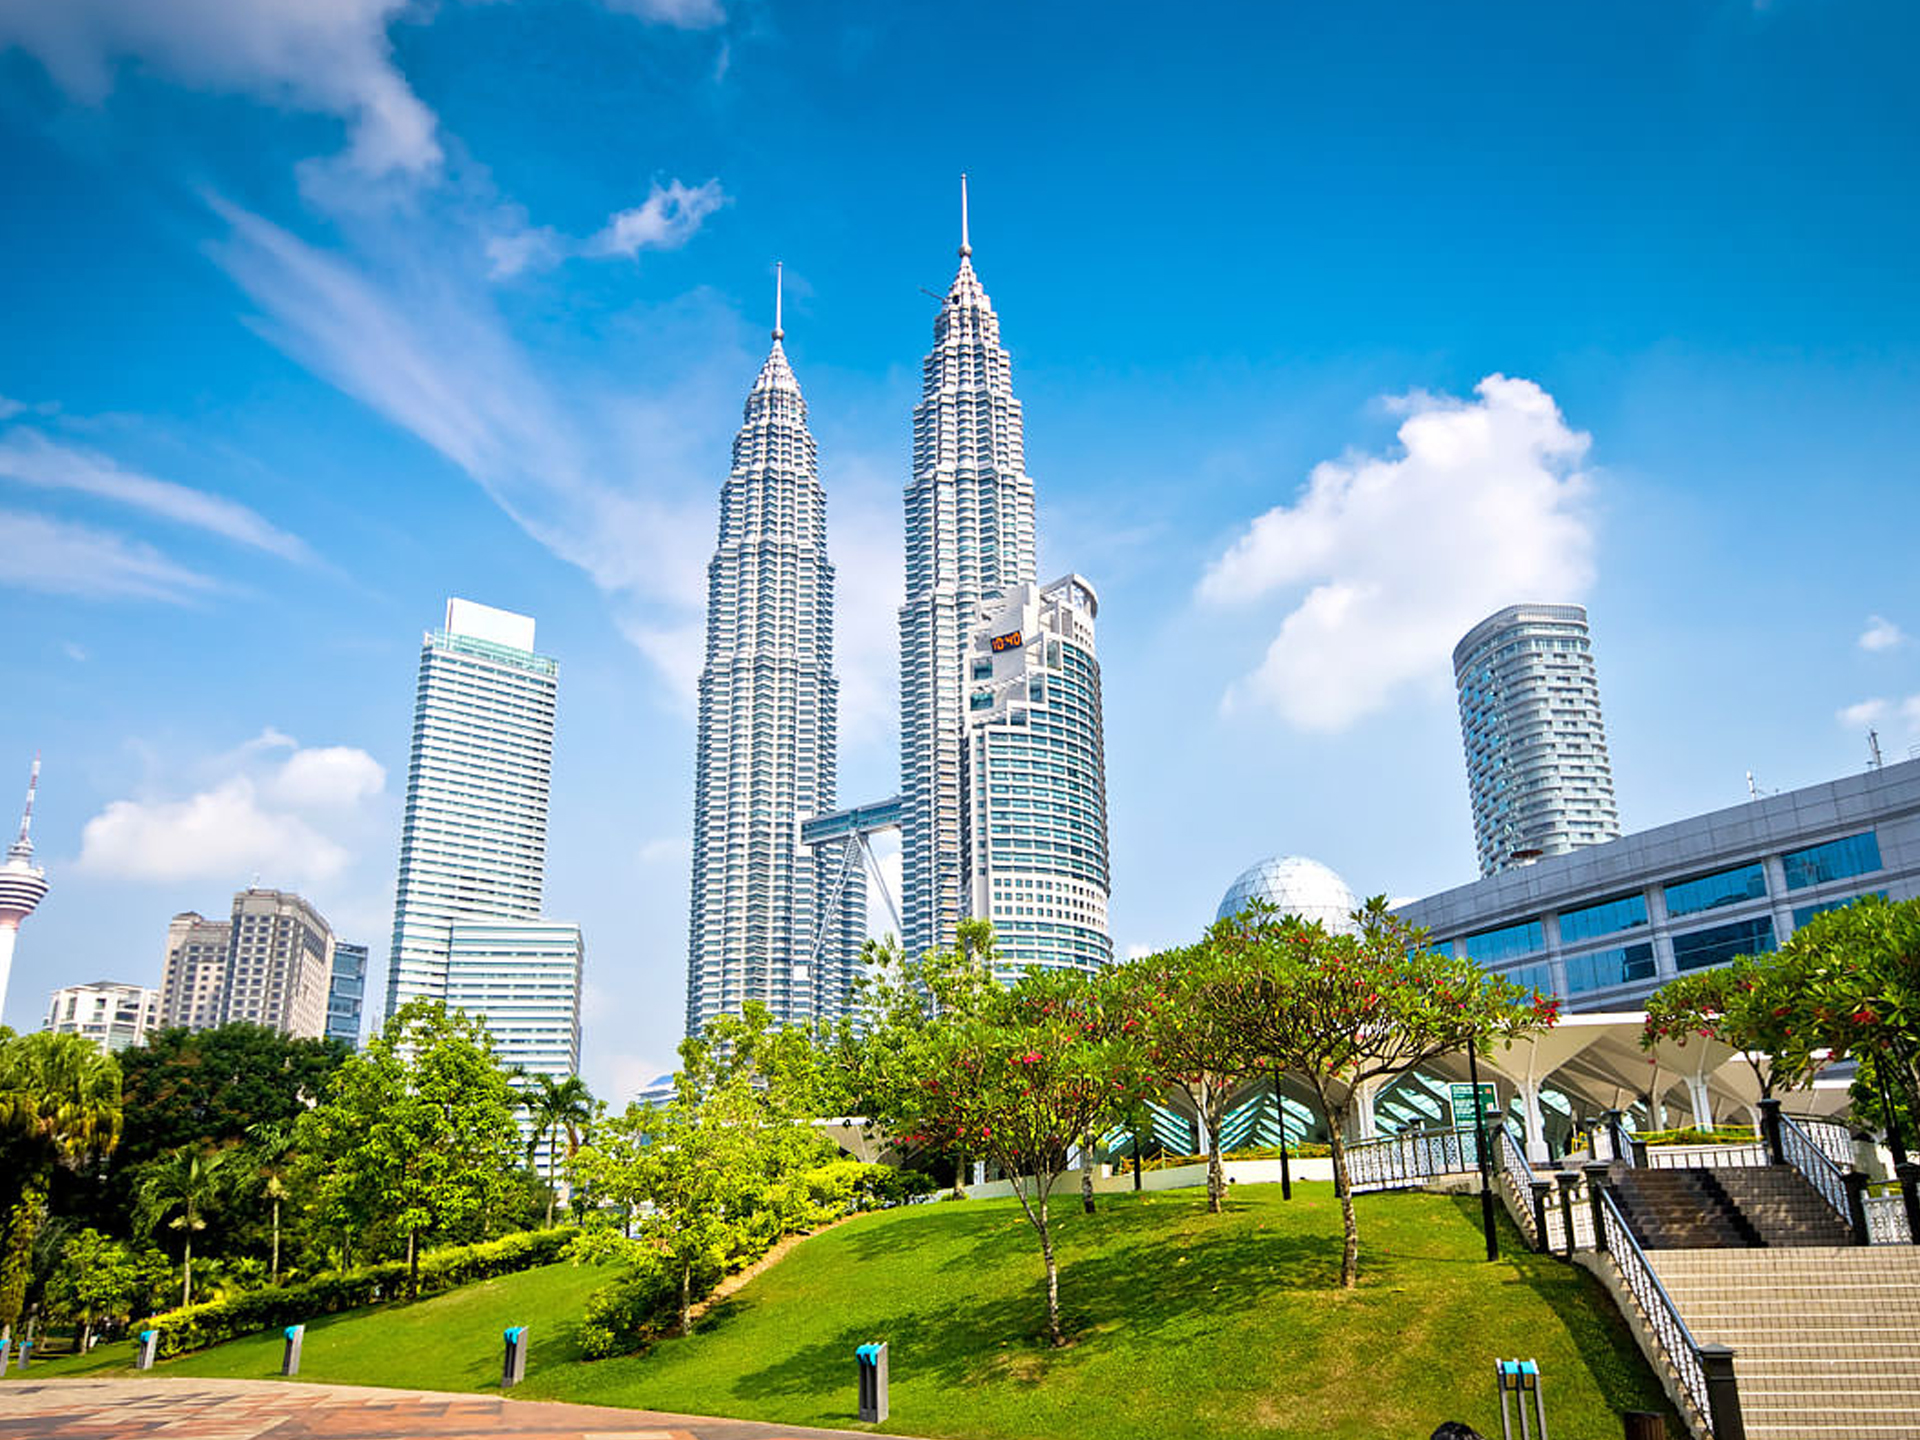 Du lịch Malaysia tự túc - Khám phá đất nước xinh đẹp theo cách của riêng bạn